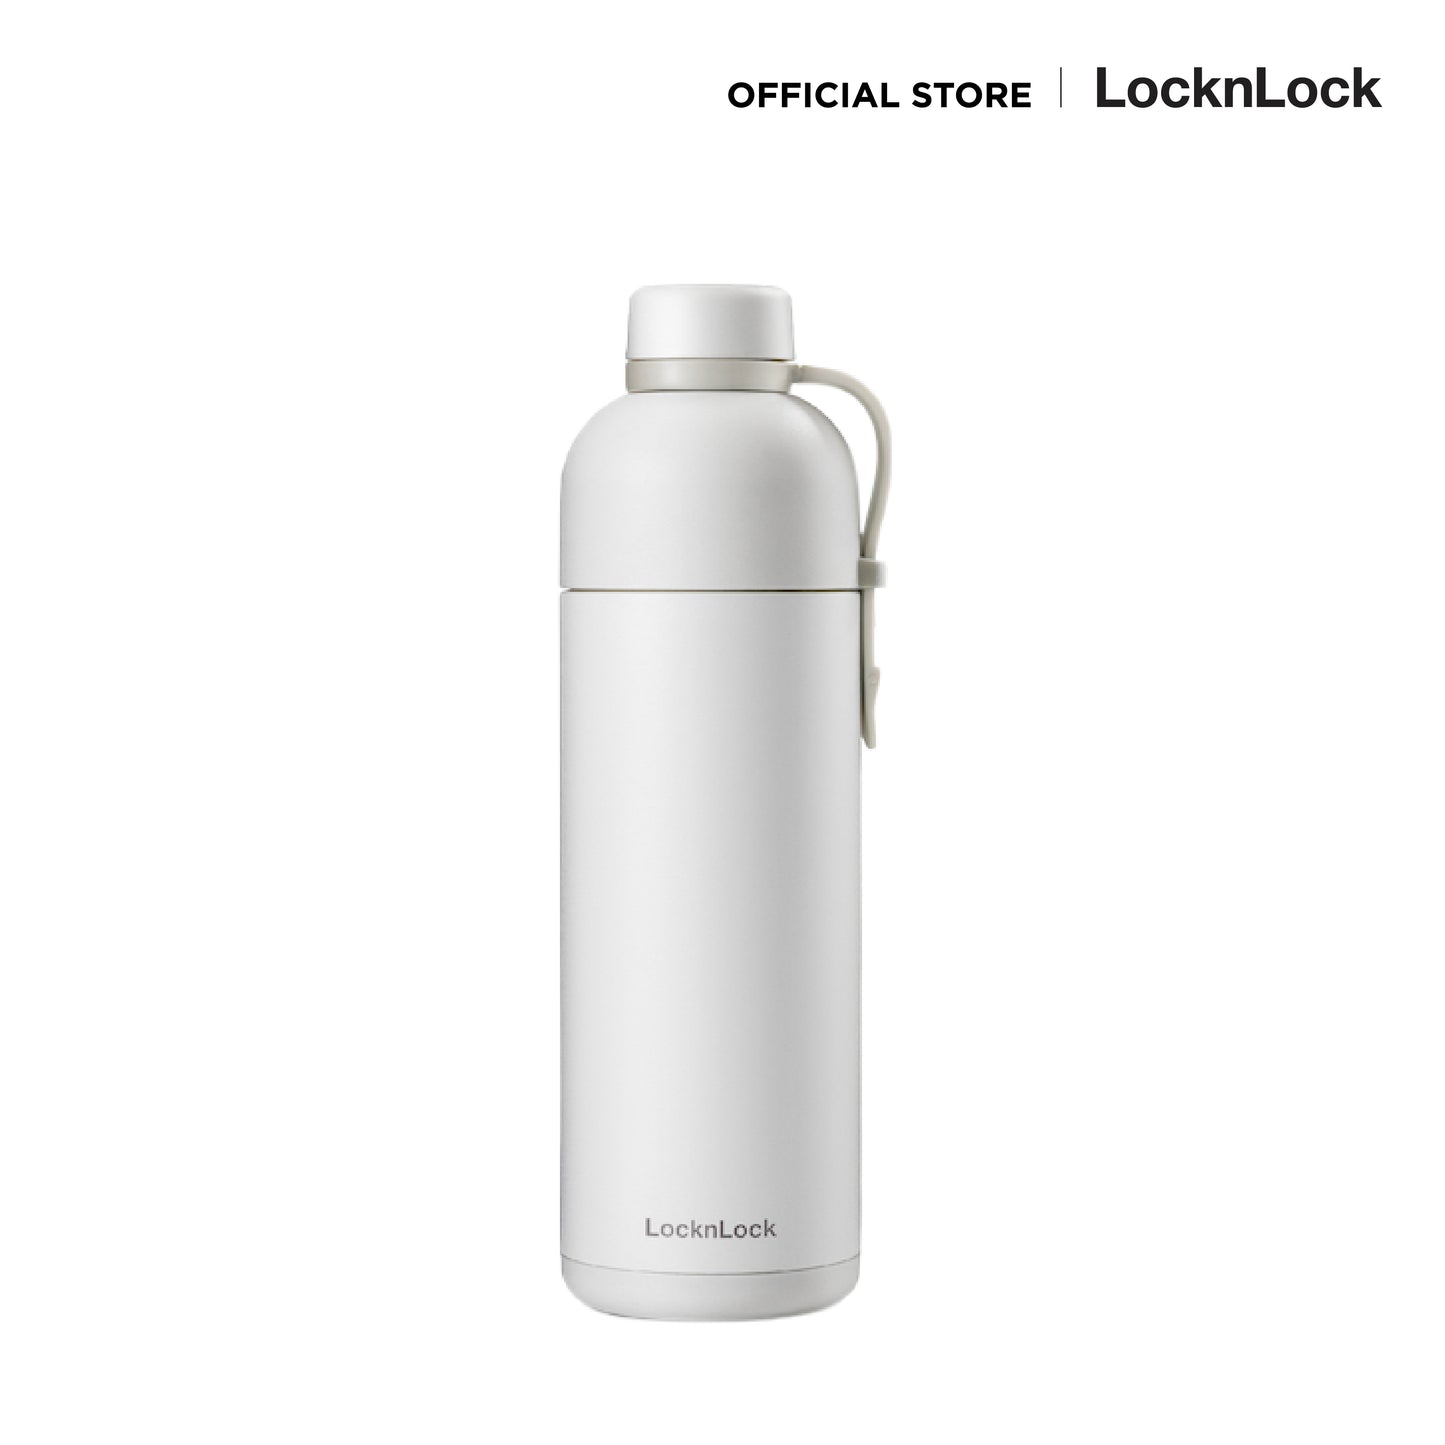 LocknLock กระบอกน้ำเก็บอุณหภูมิ Belt Bottle ความจุ 490 ml. รุ่น LHC4267